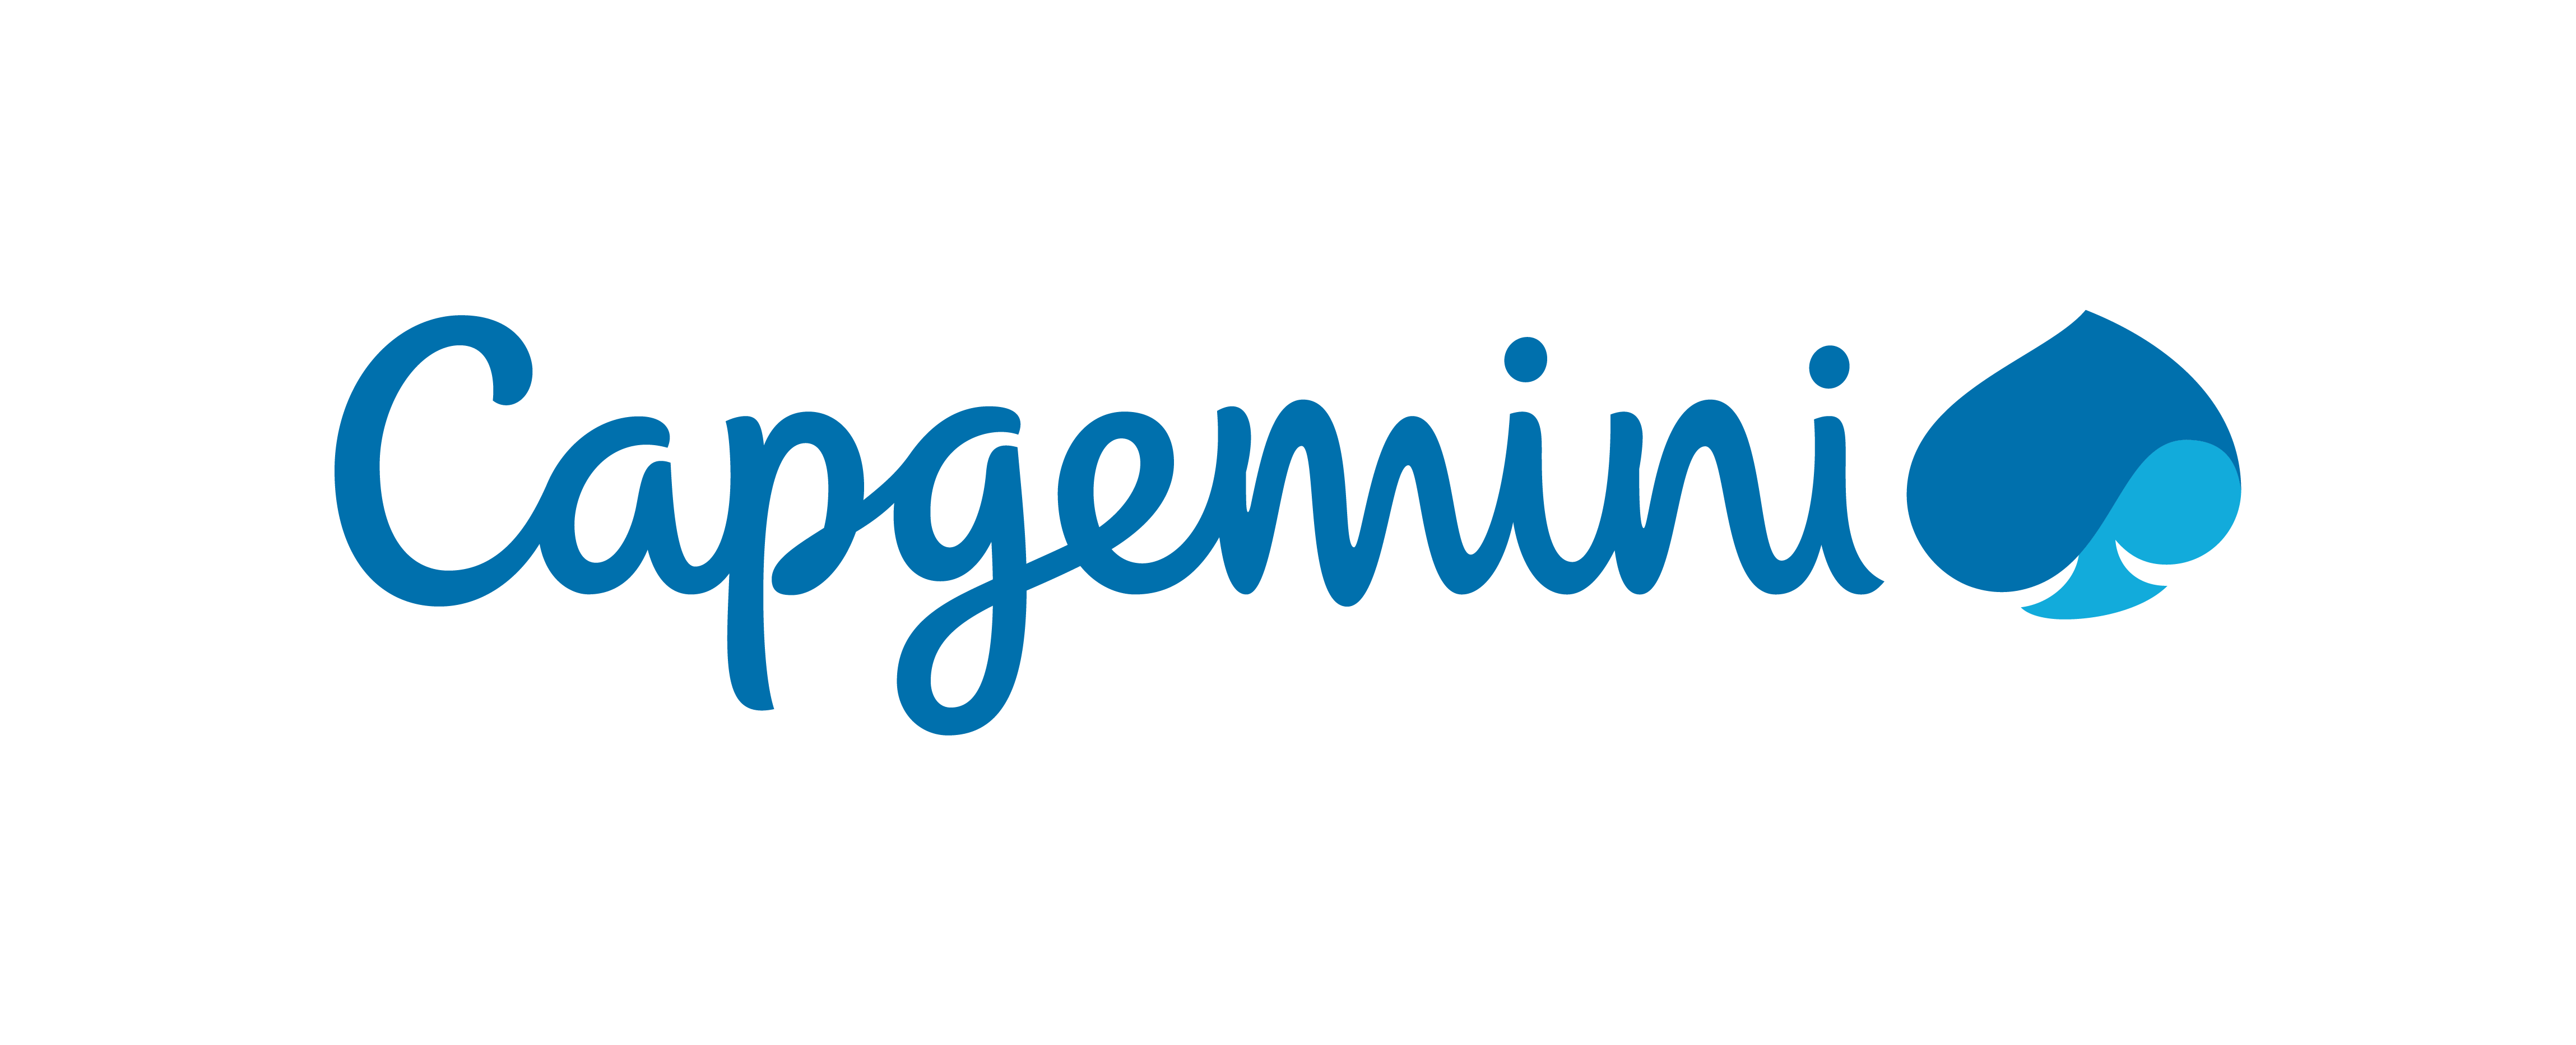 Grafika przedstawia logotyp Capgemini